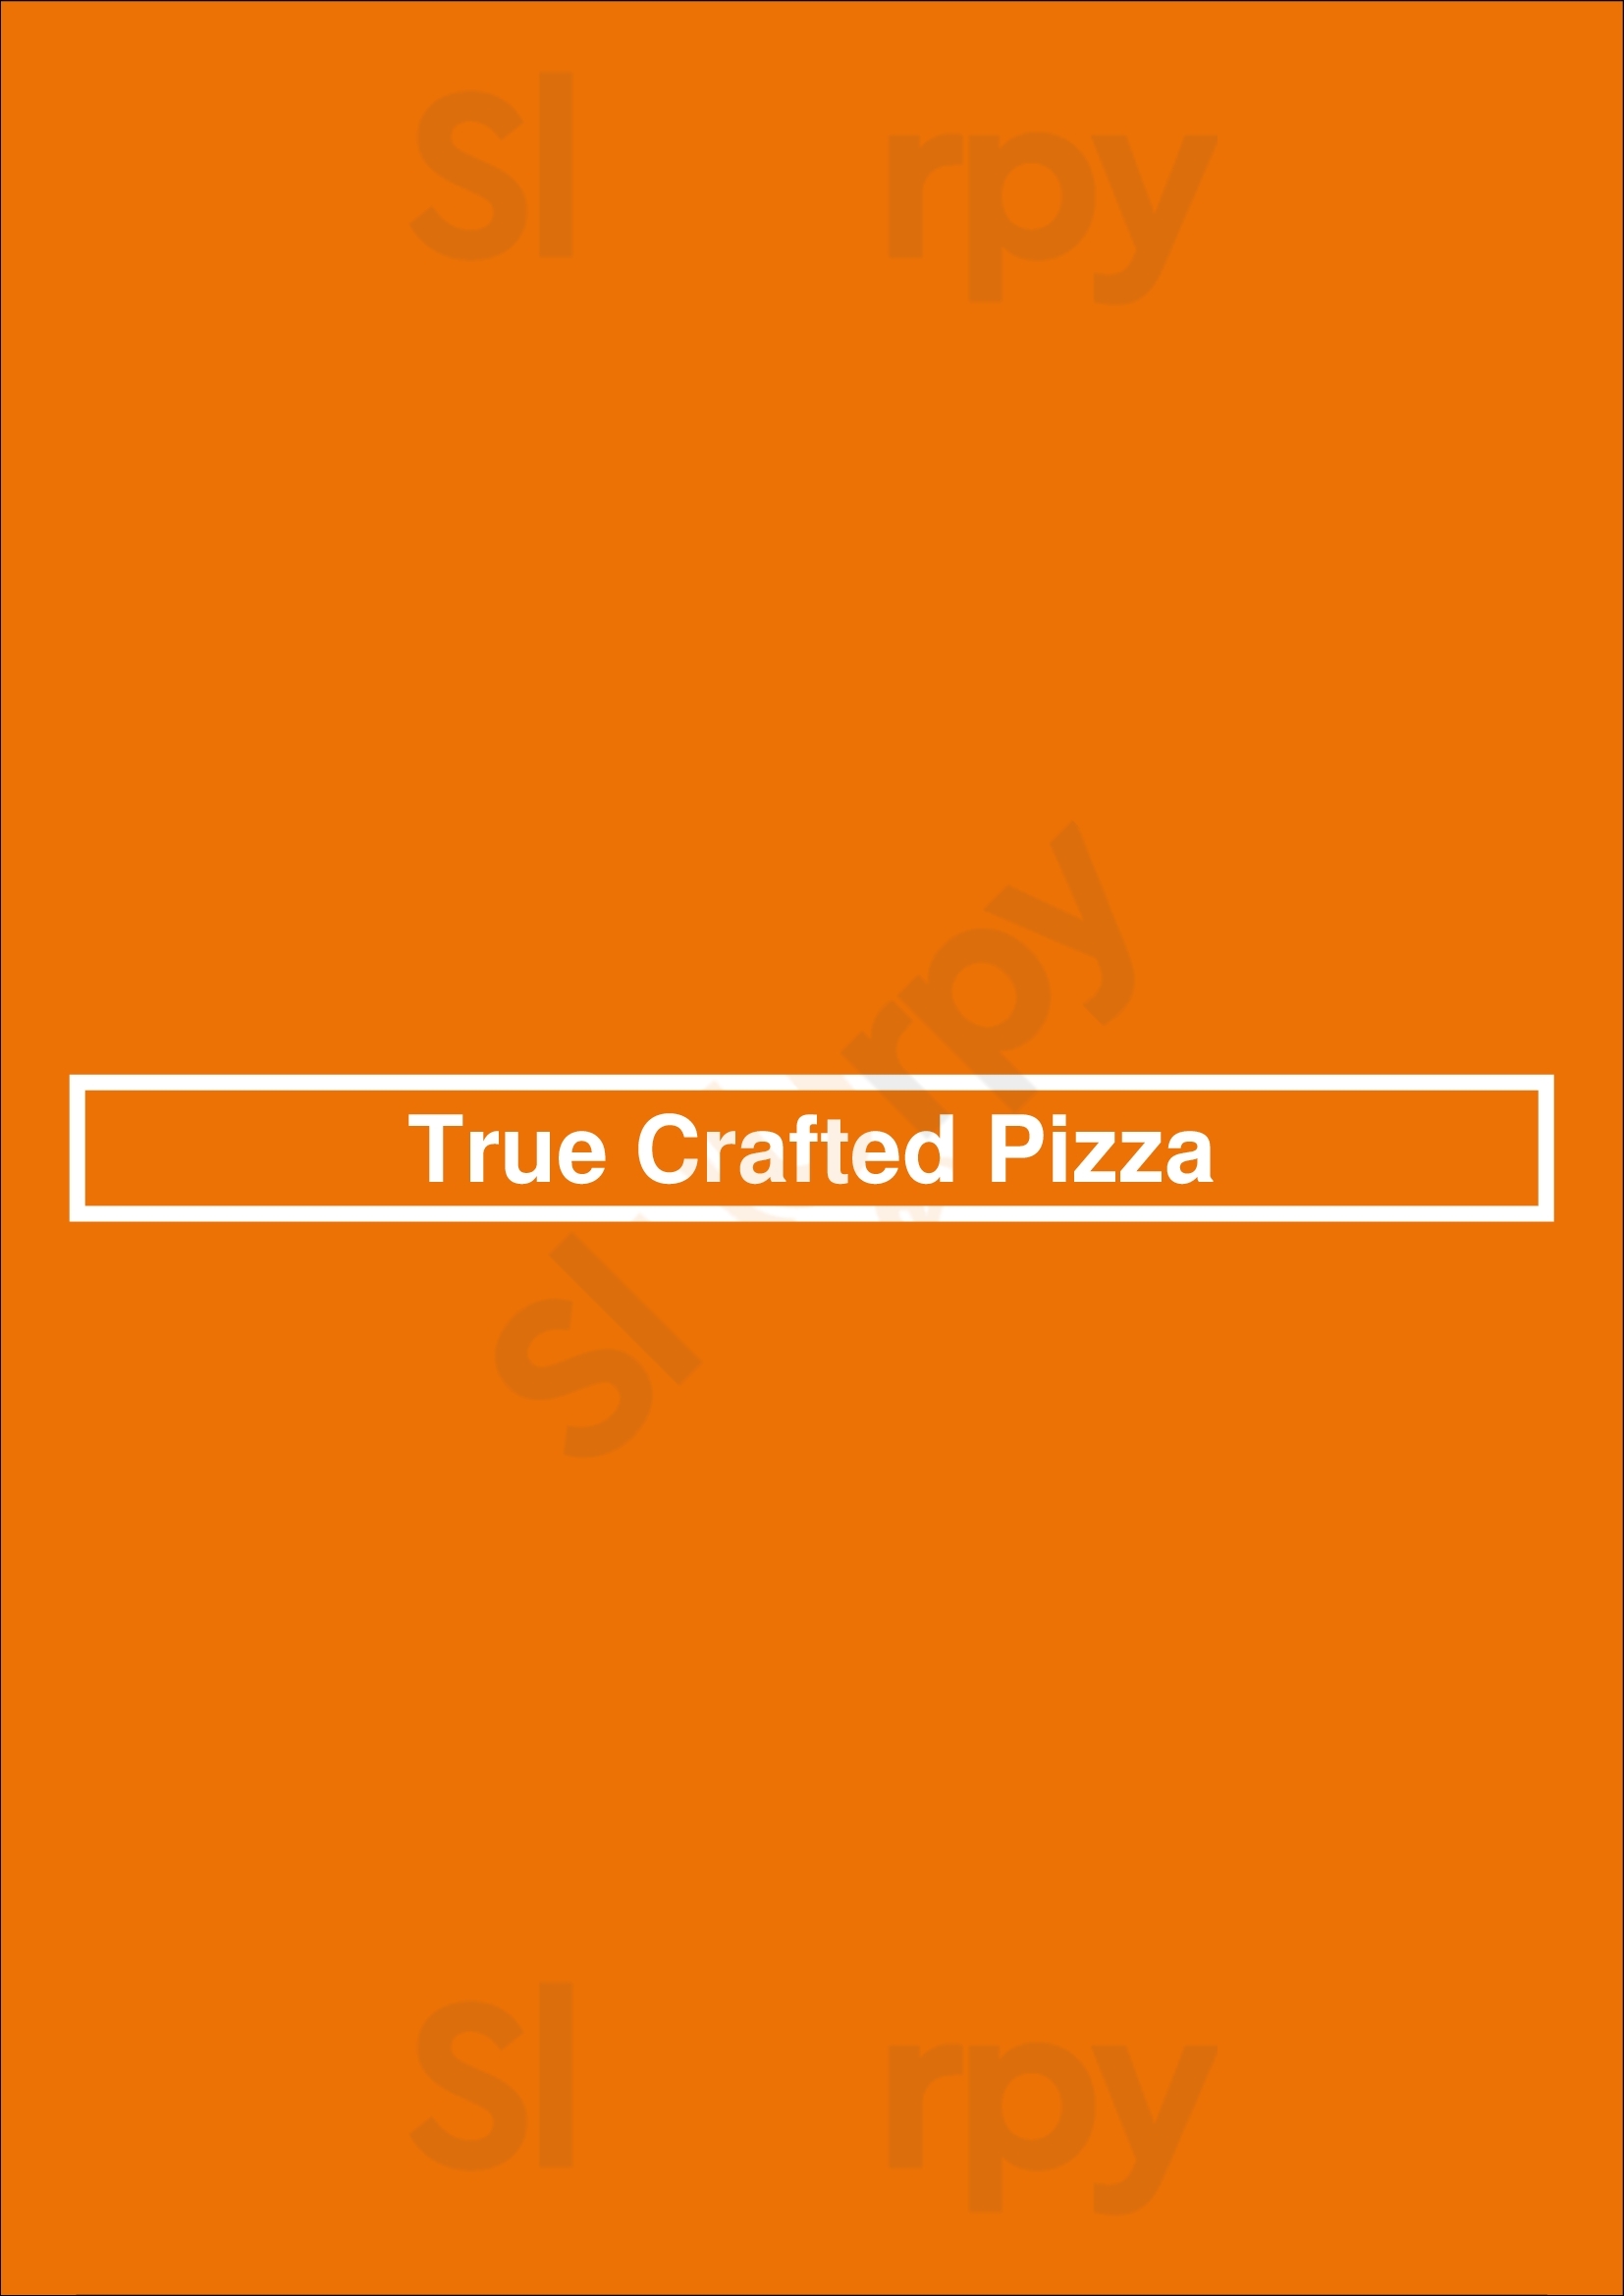 True Crafted Pizza Charlotte Menu - 1